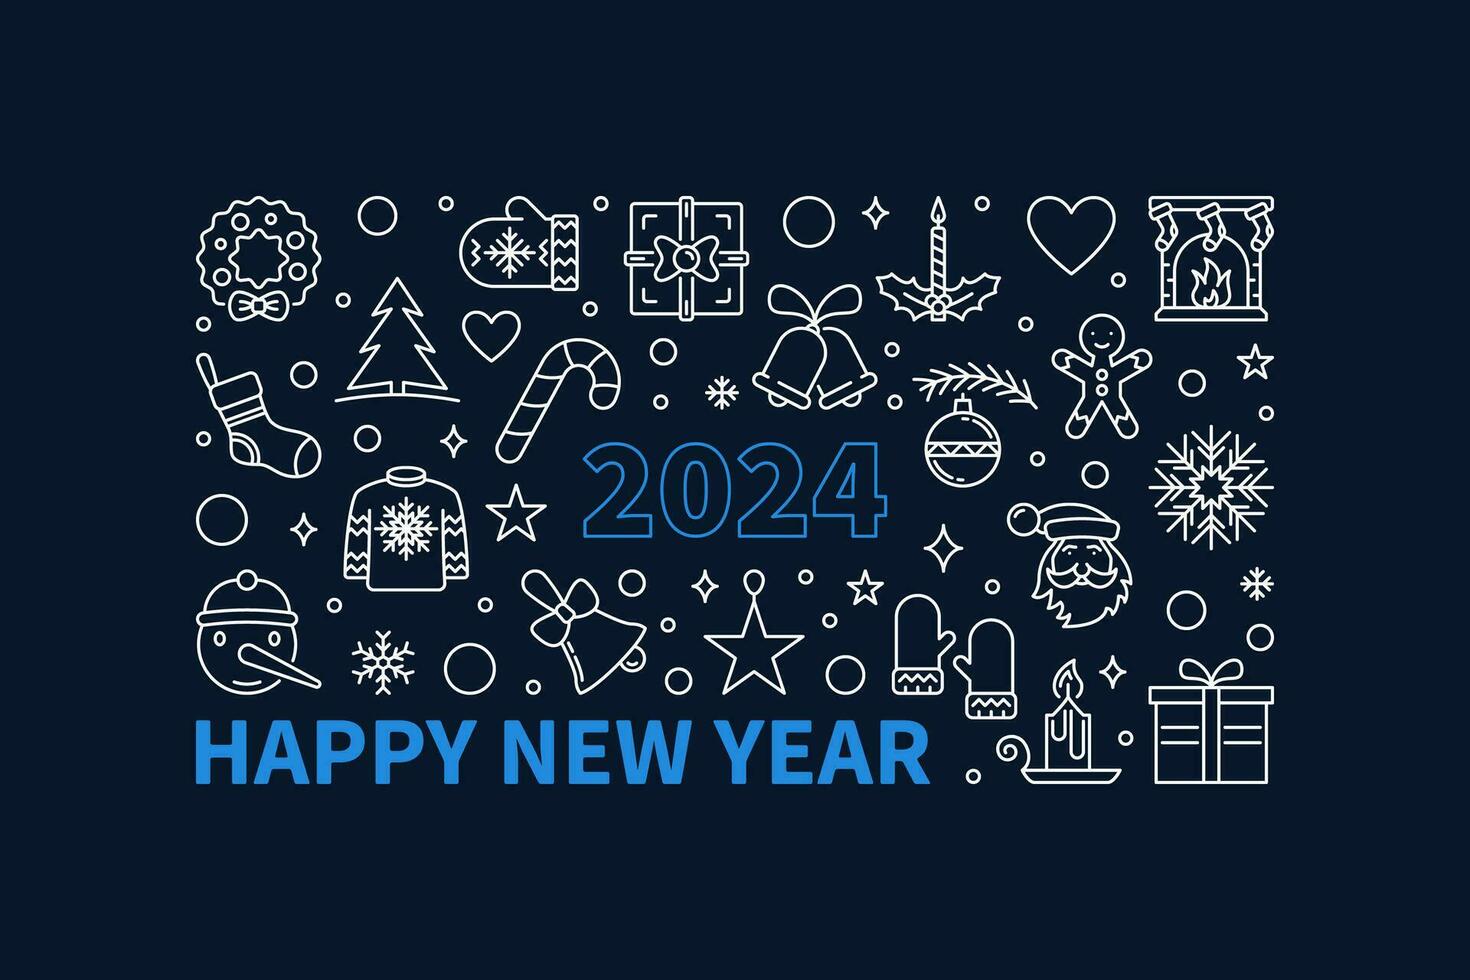 contento nuevo año 2024 saludo tarjeta o bandera - vector contorno horizontal ilustración